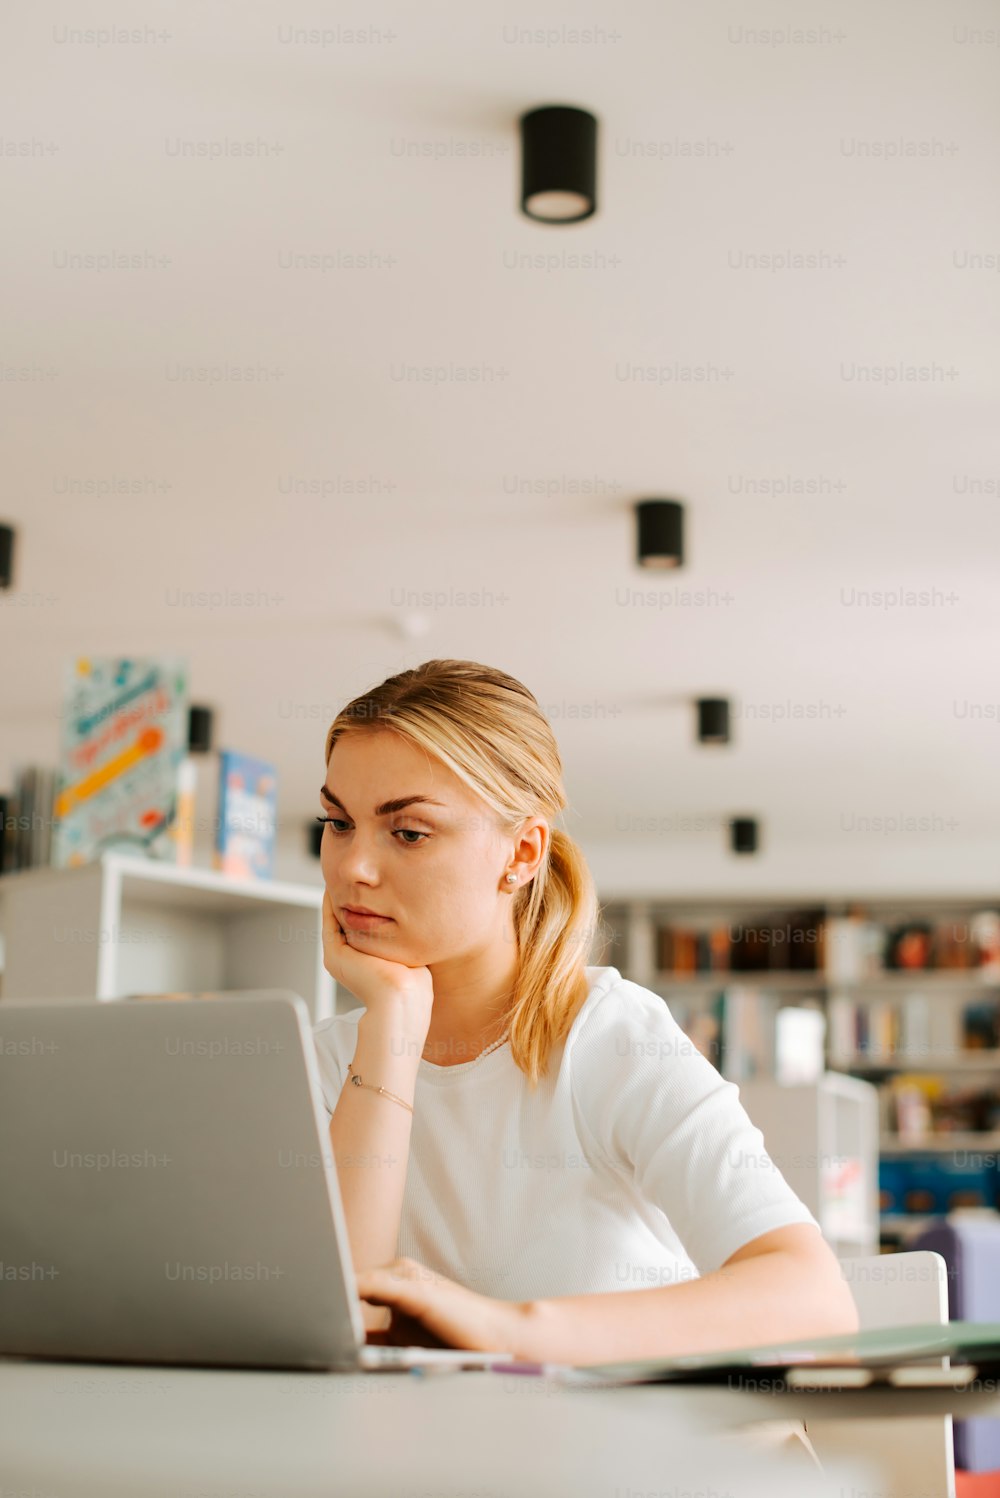 Una donna seduta davanti a un computer portatile